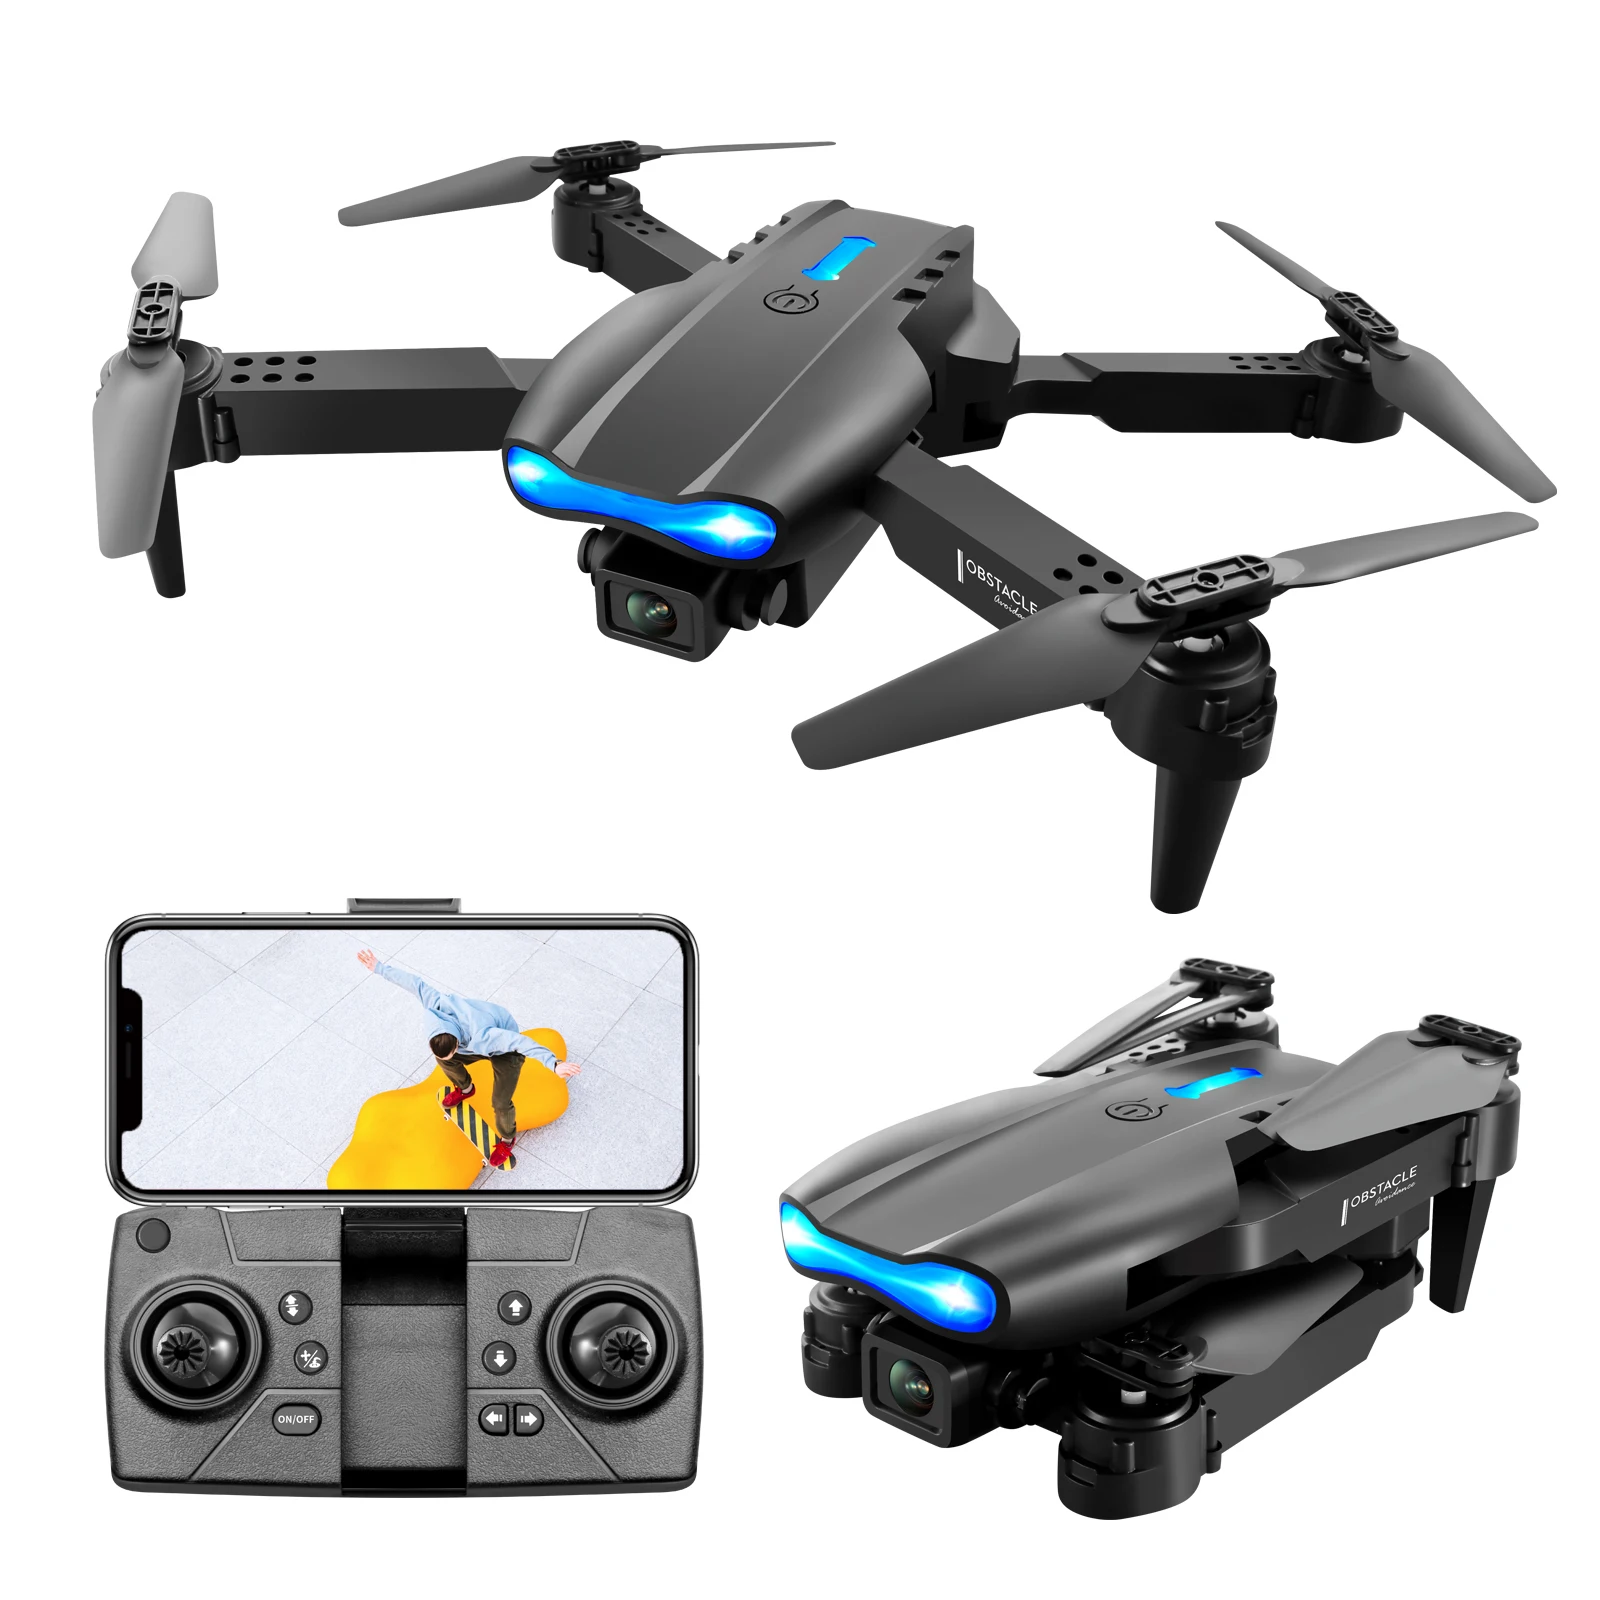 

NEW style 4k HD wide-angle dual camera Obstacle avoidance FPV WIFI rc drone quadcopter with camera E99 K3 Drone vs E58 vs E88